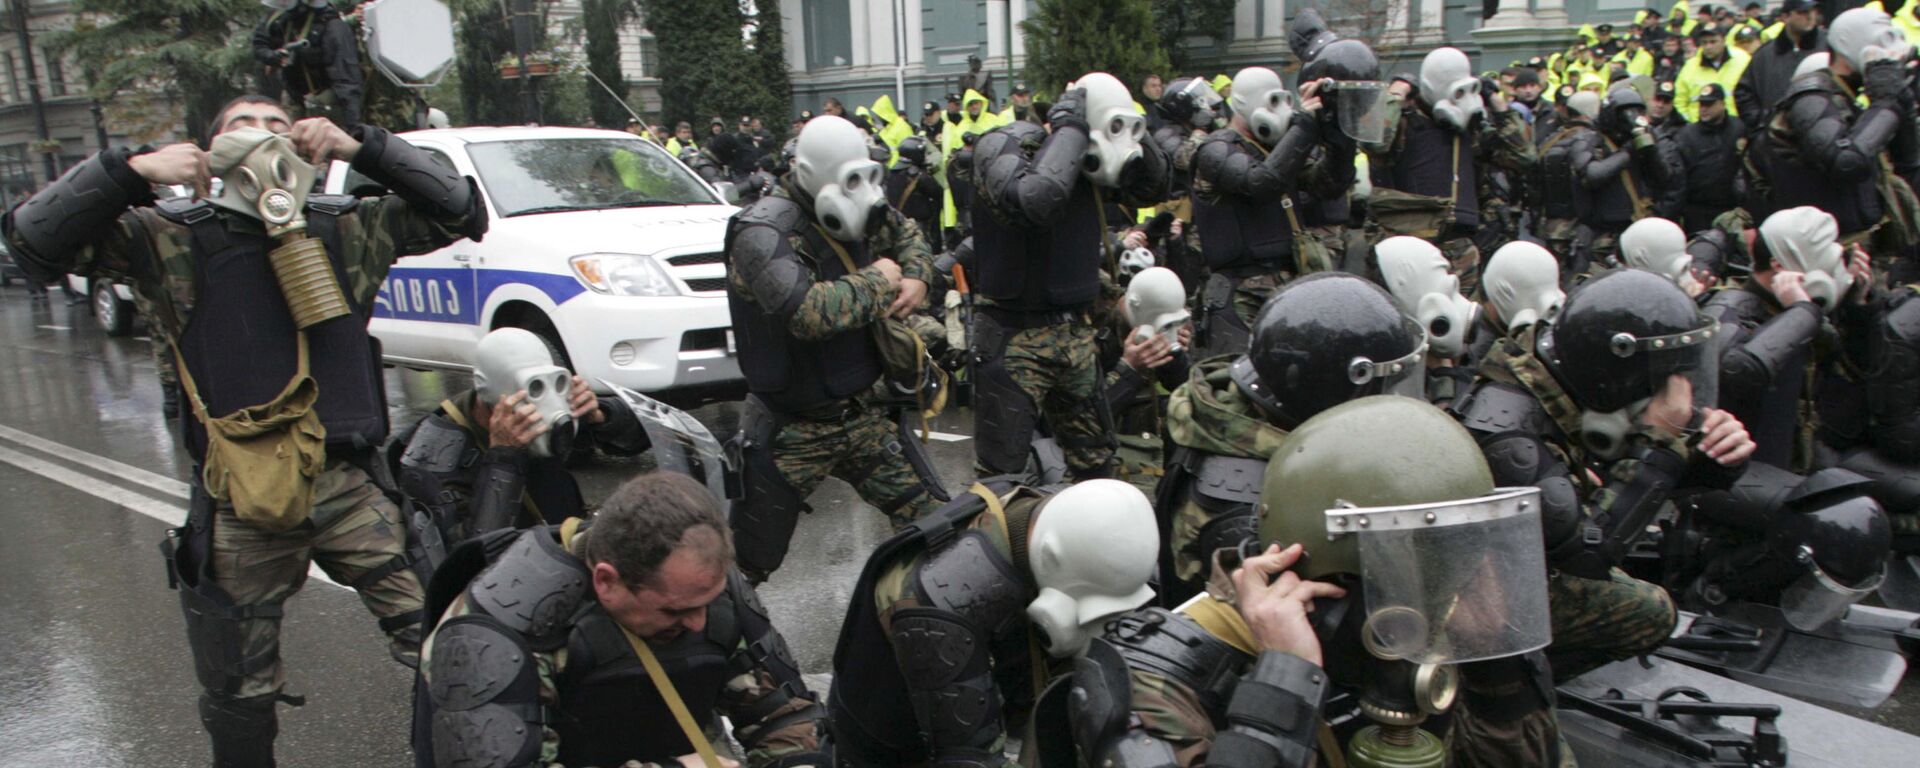 Полицейские участвуют в разгоне акции протеста 7 ноября 2007 года, архивное фото - Sputnik Грузия, 1920, 07.11.2018